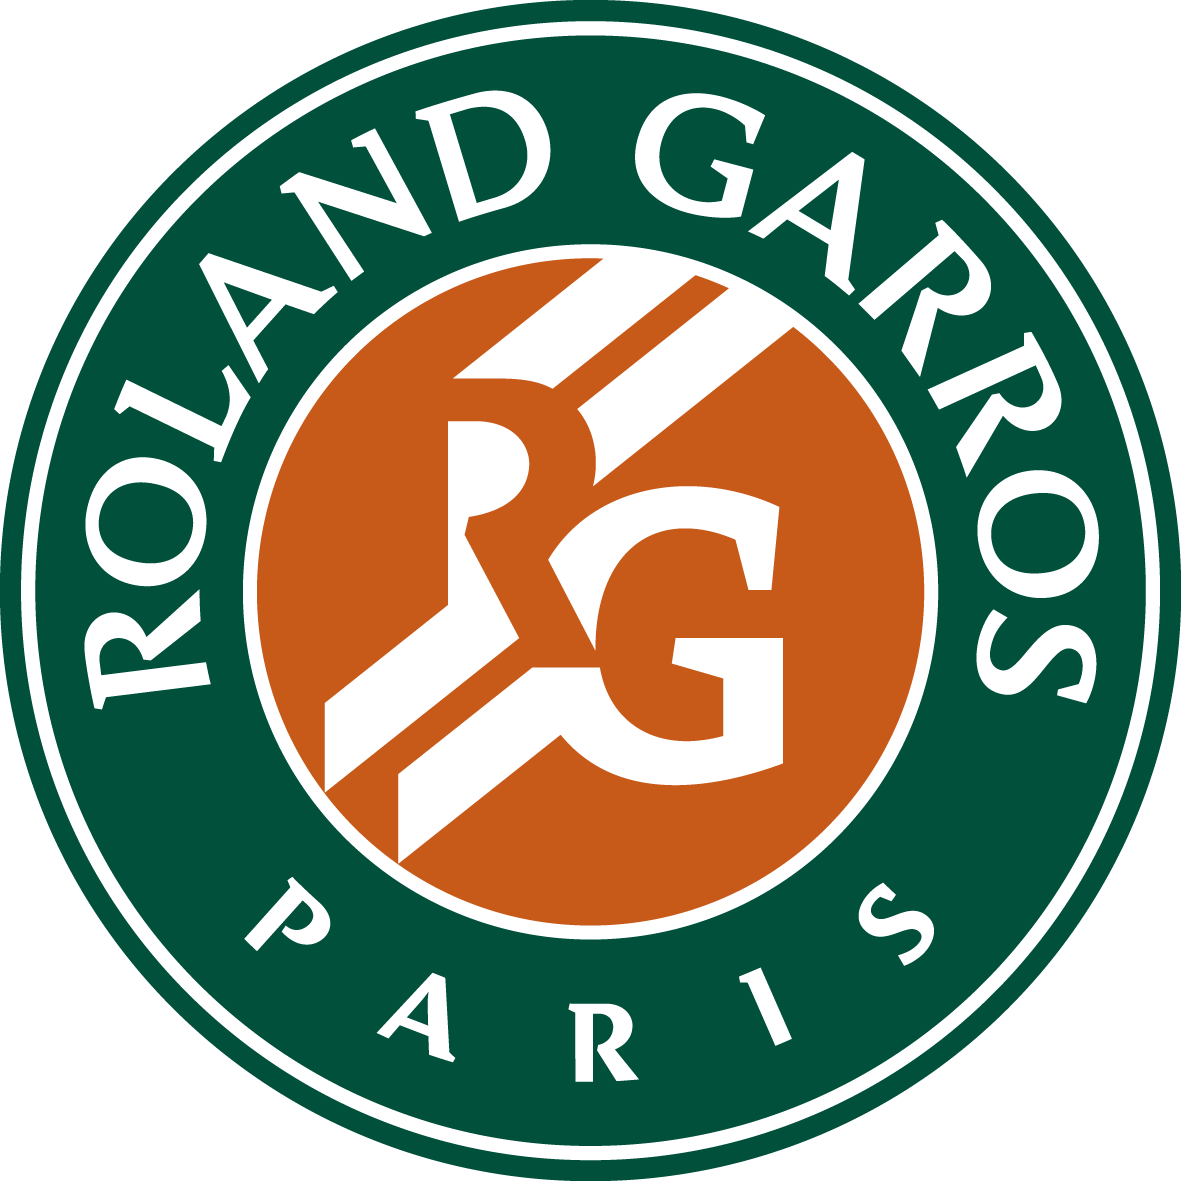 Roland Garros The 2021 Roland Garros Tournament Official Site